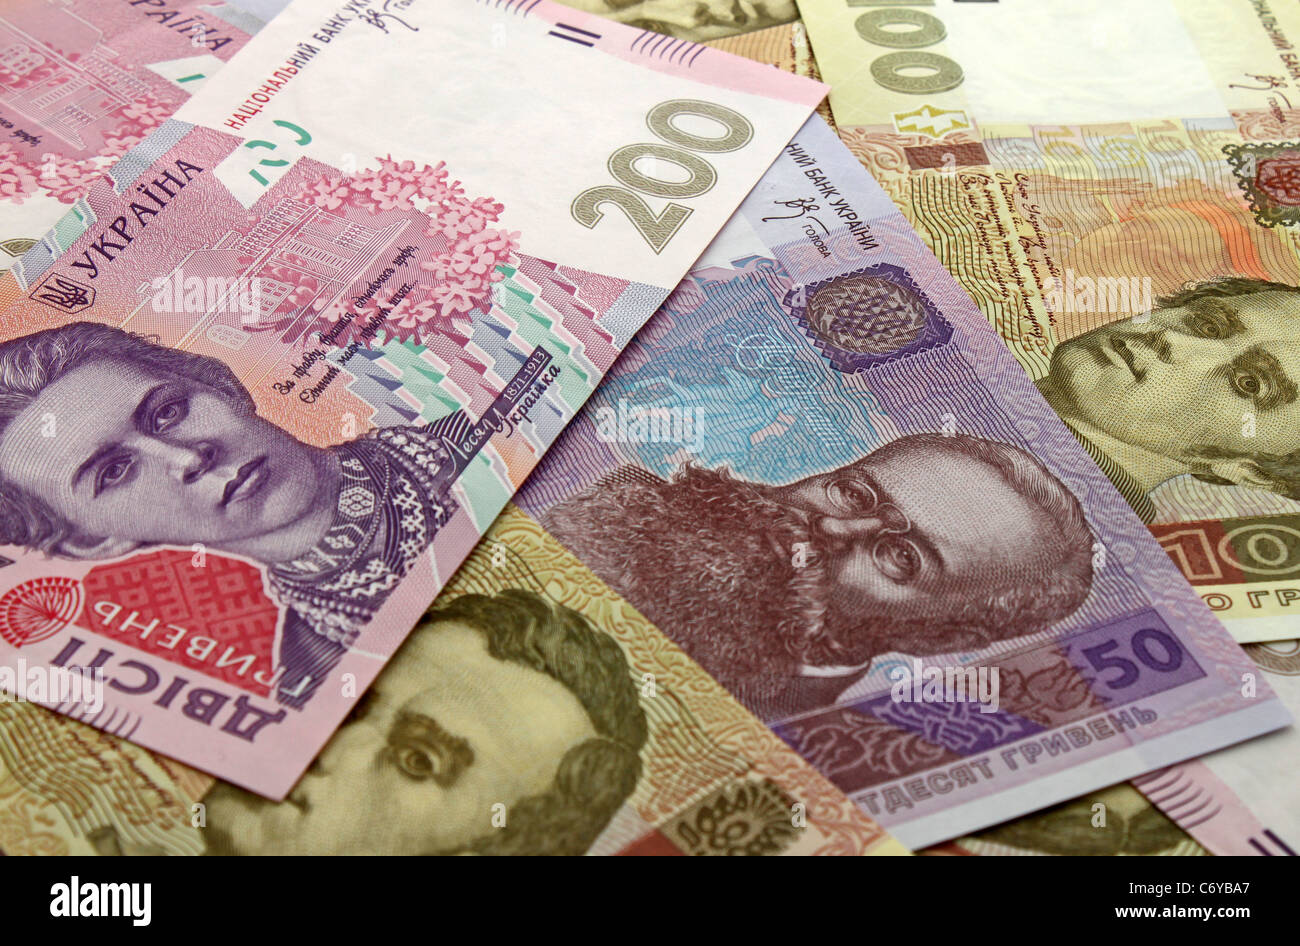 Fondo de efectivo: Moneda de Ucrania (Hrivna) Foto de stock